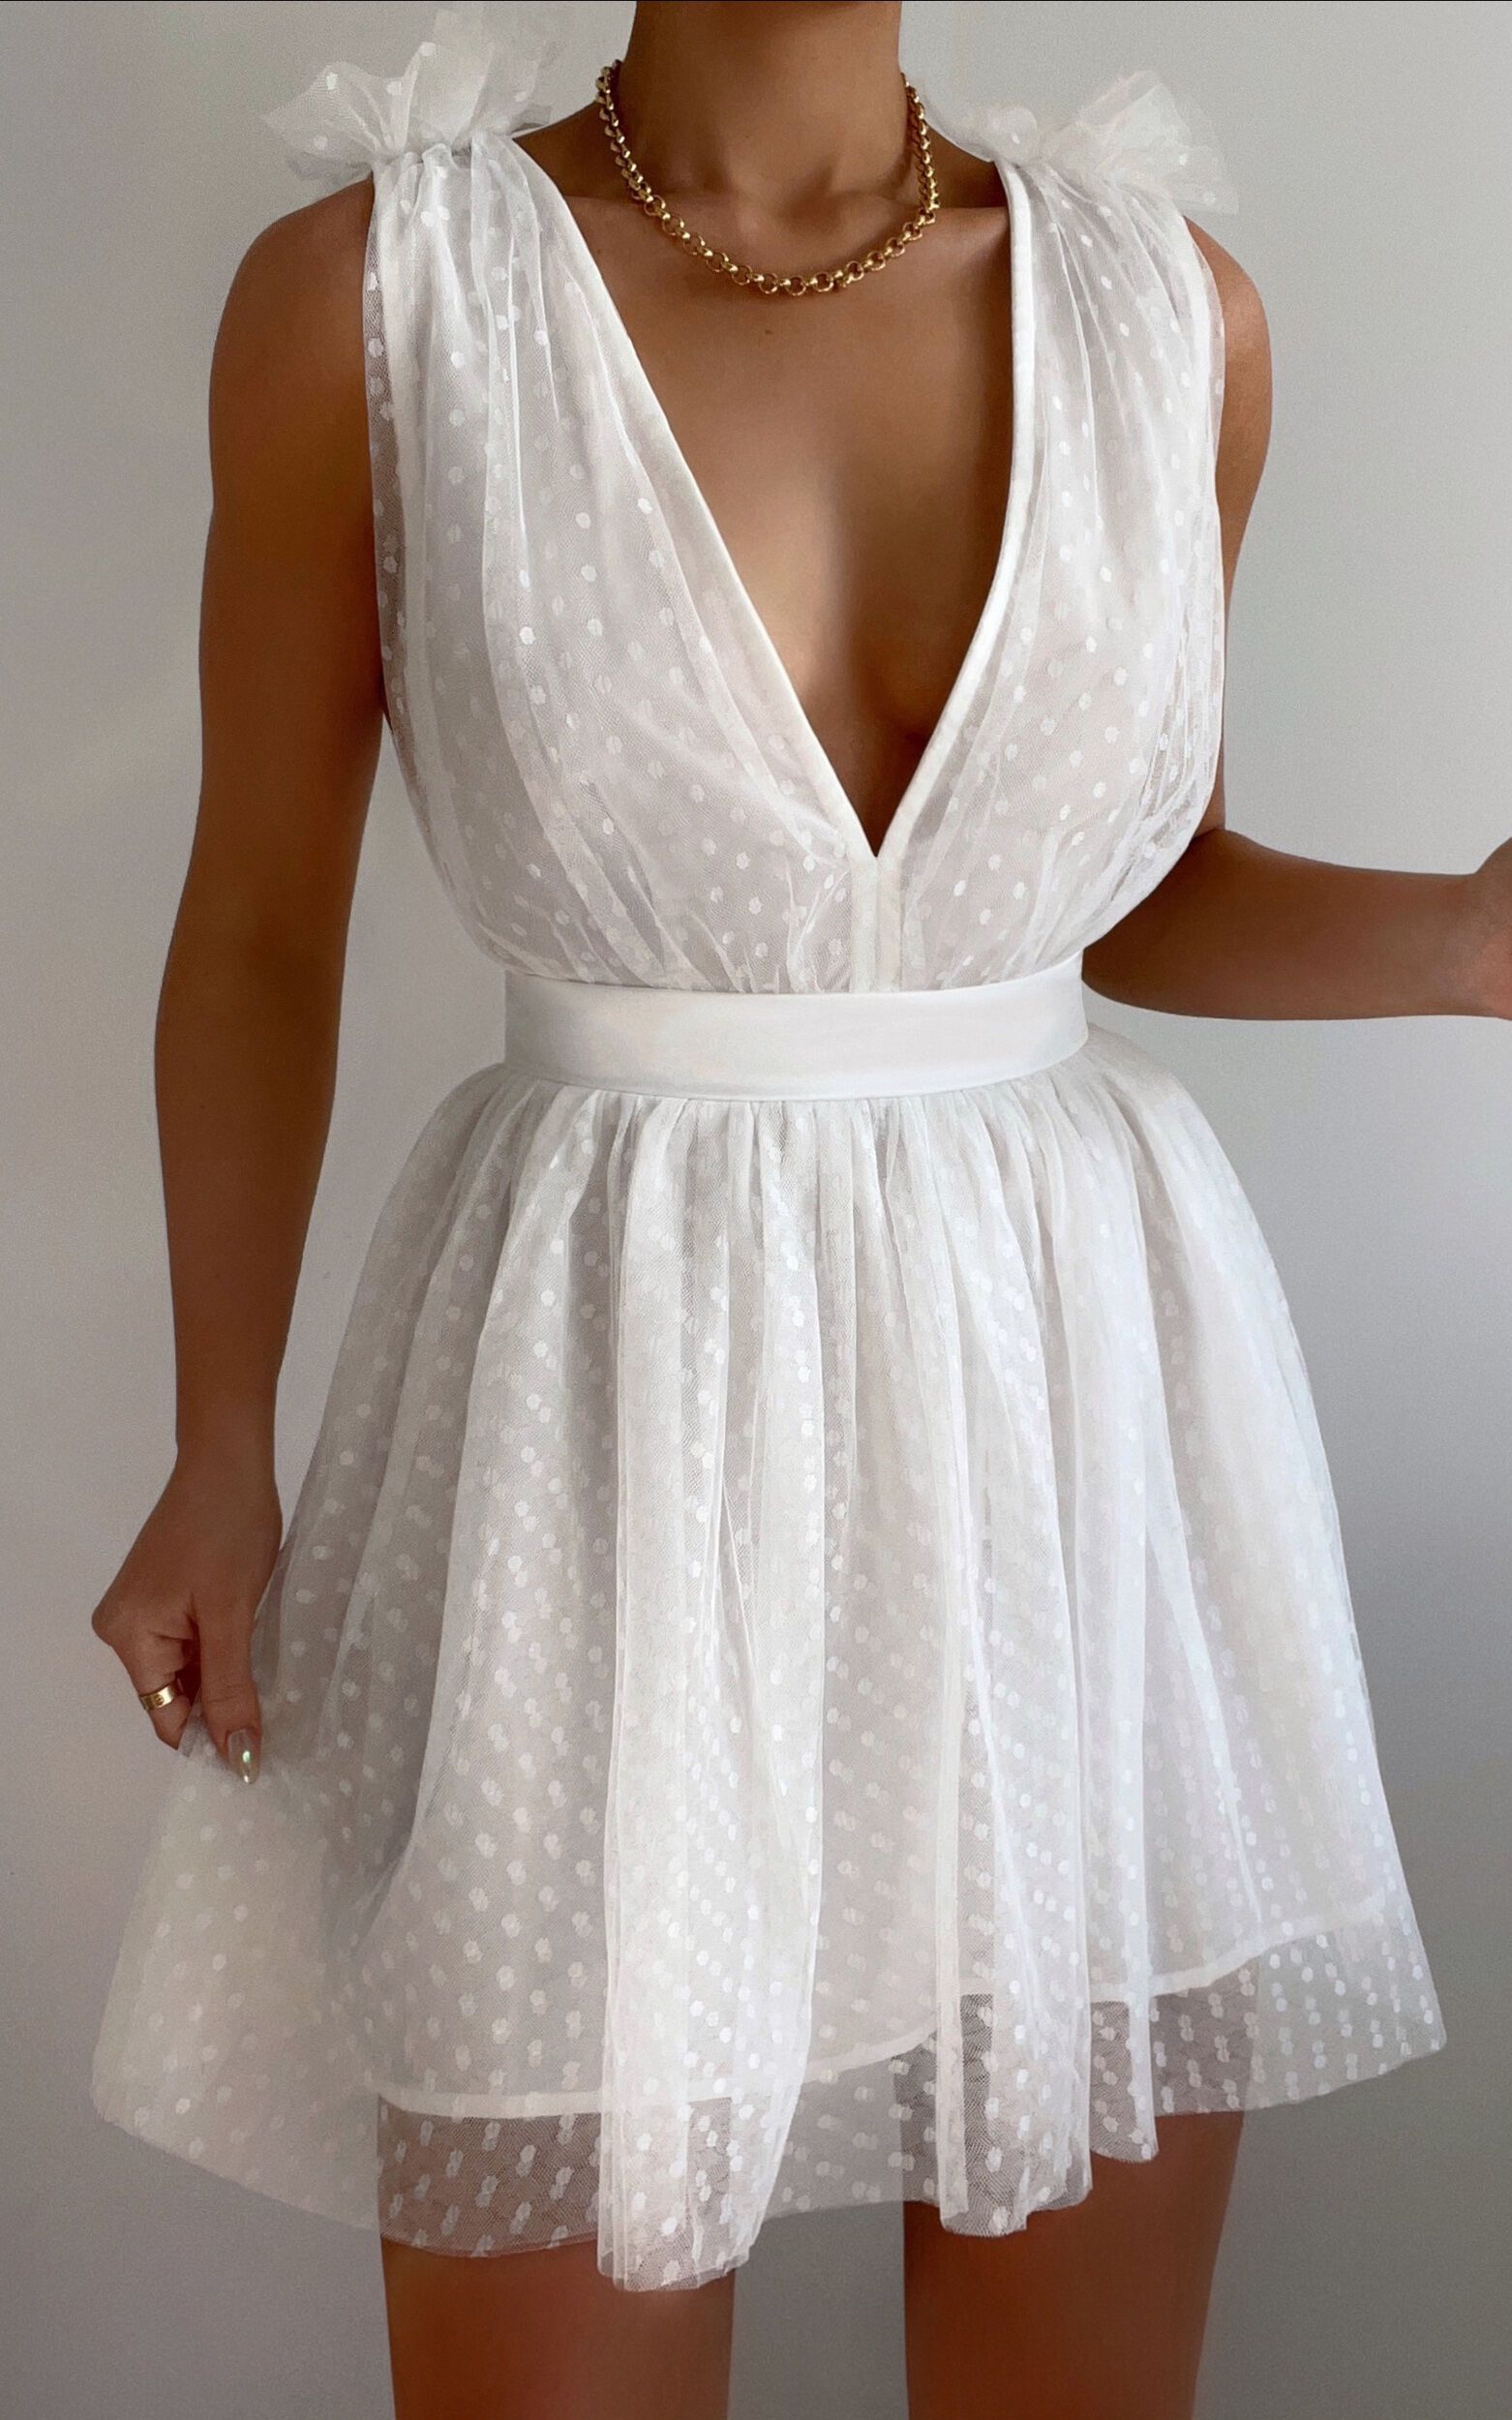 Mariabella Plunge Tulle Mini Dress in White | Showpo (ANZ)